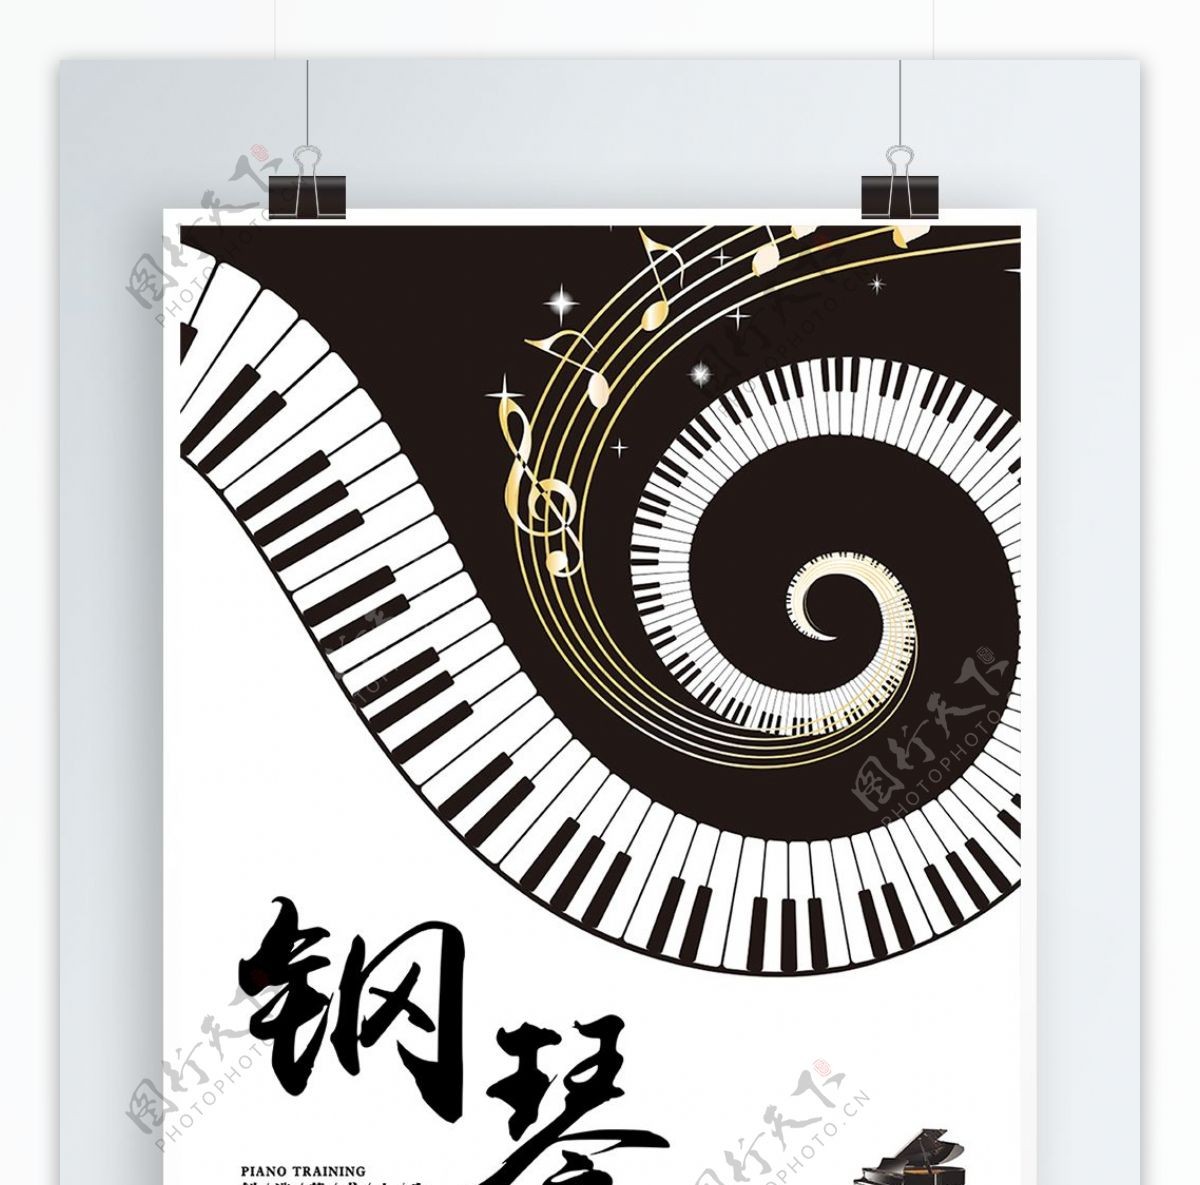 钢琴艺术兴趣班培训班海报